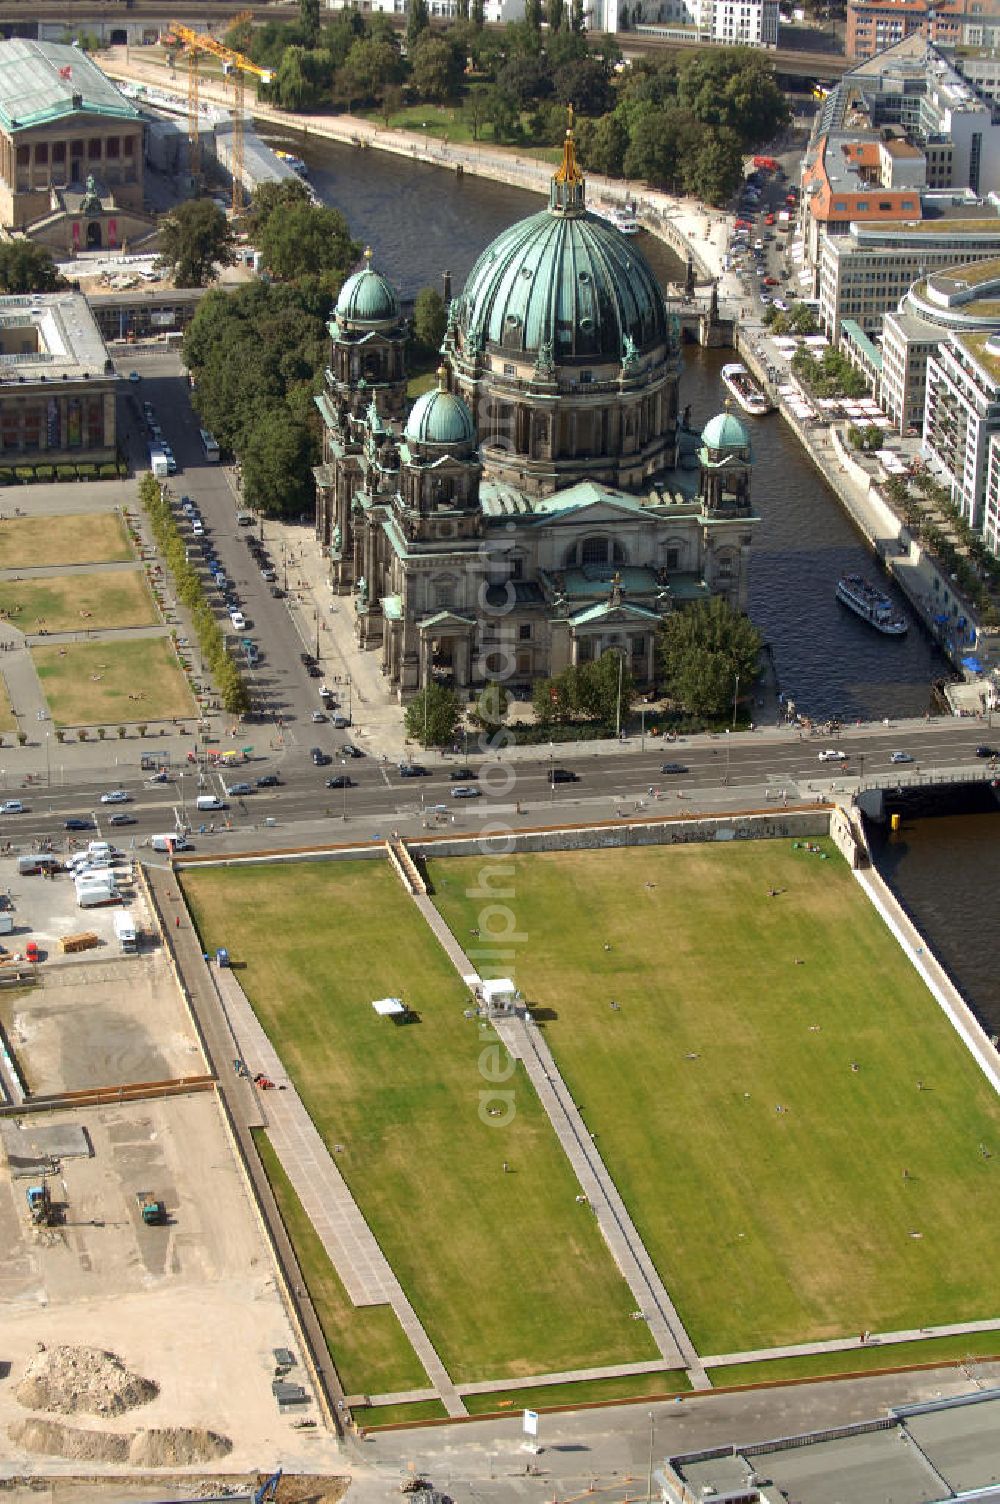 Berlin from the bird's eye view: Blick auf den Schlossplatz / Schloßplatz an der Spree mit dem Berliner Dom.